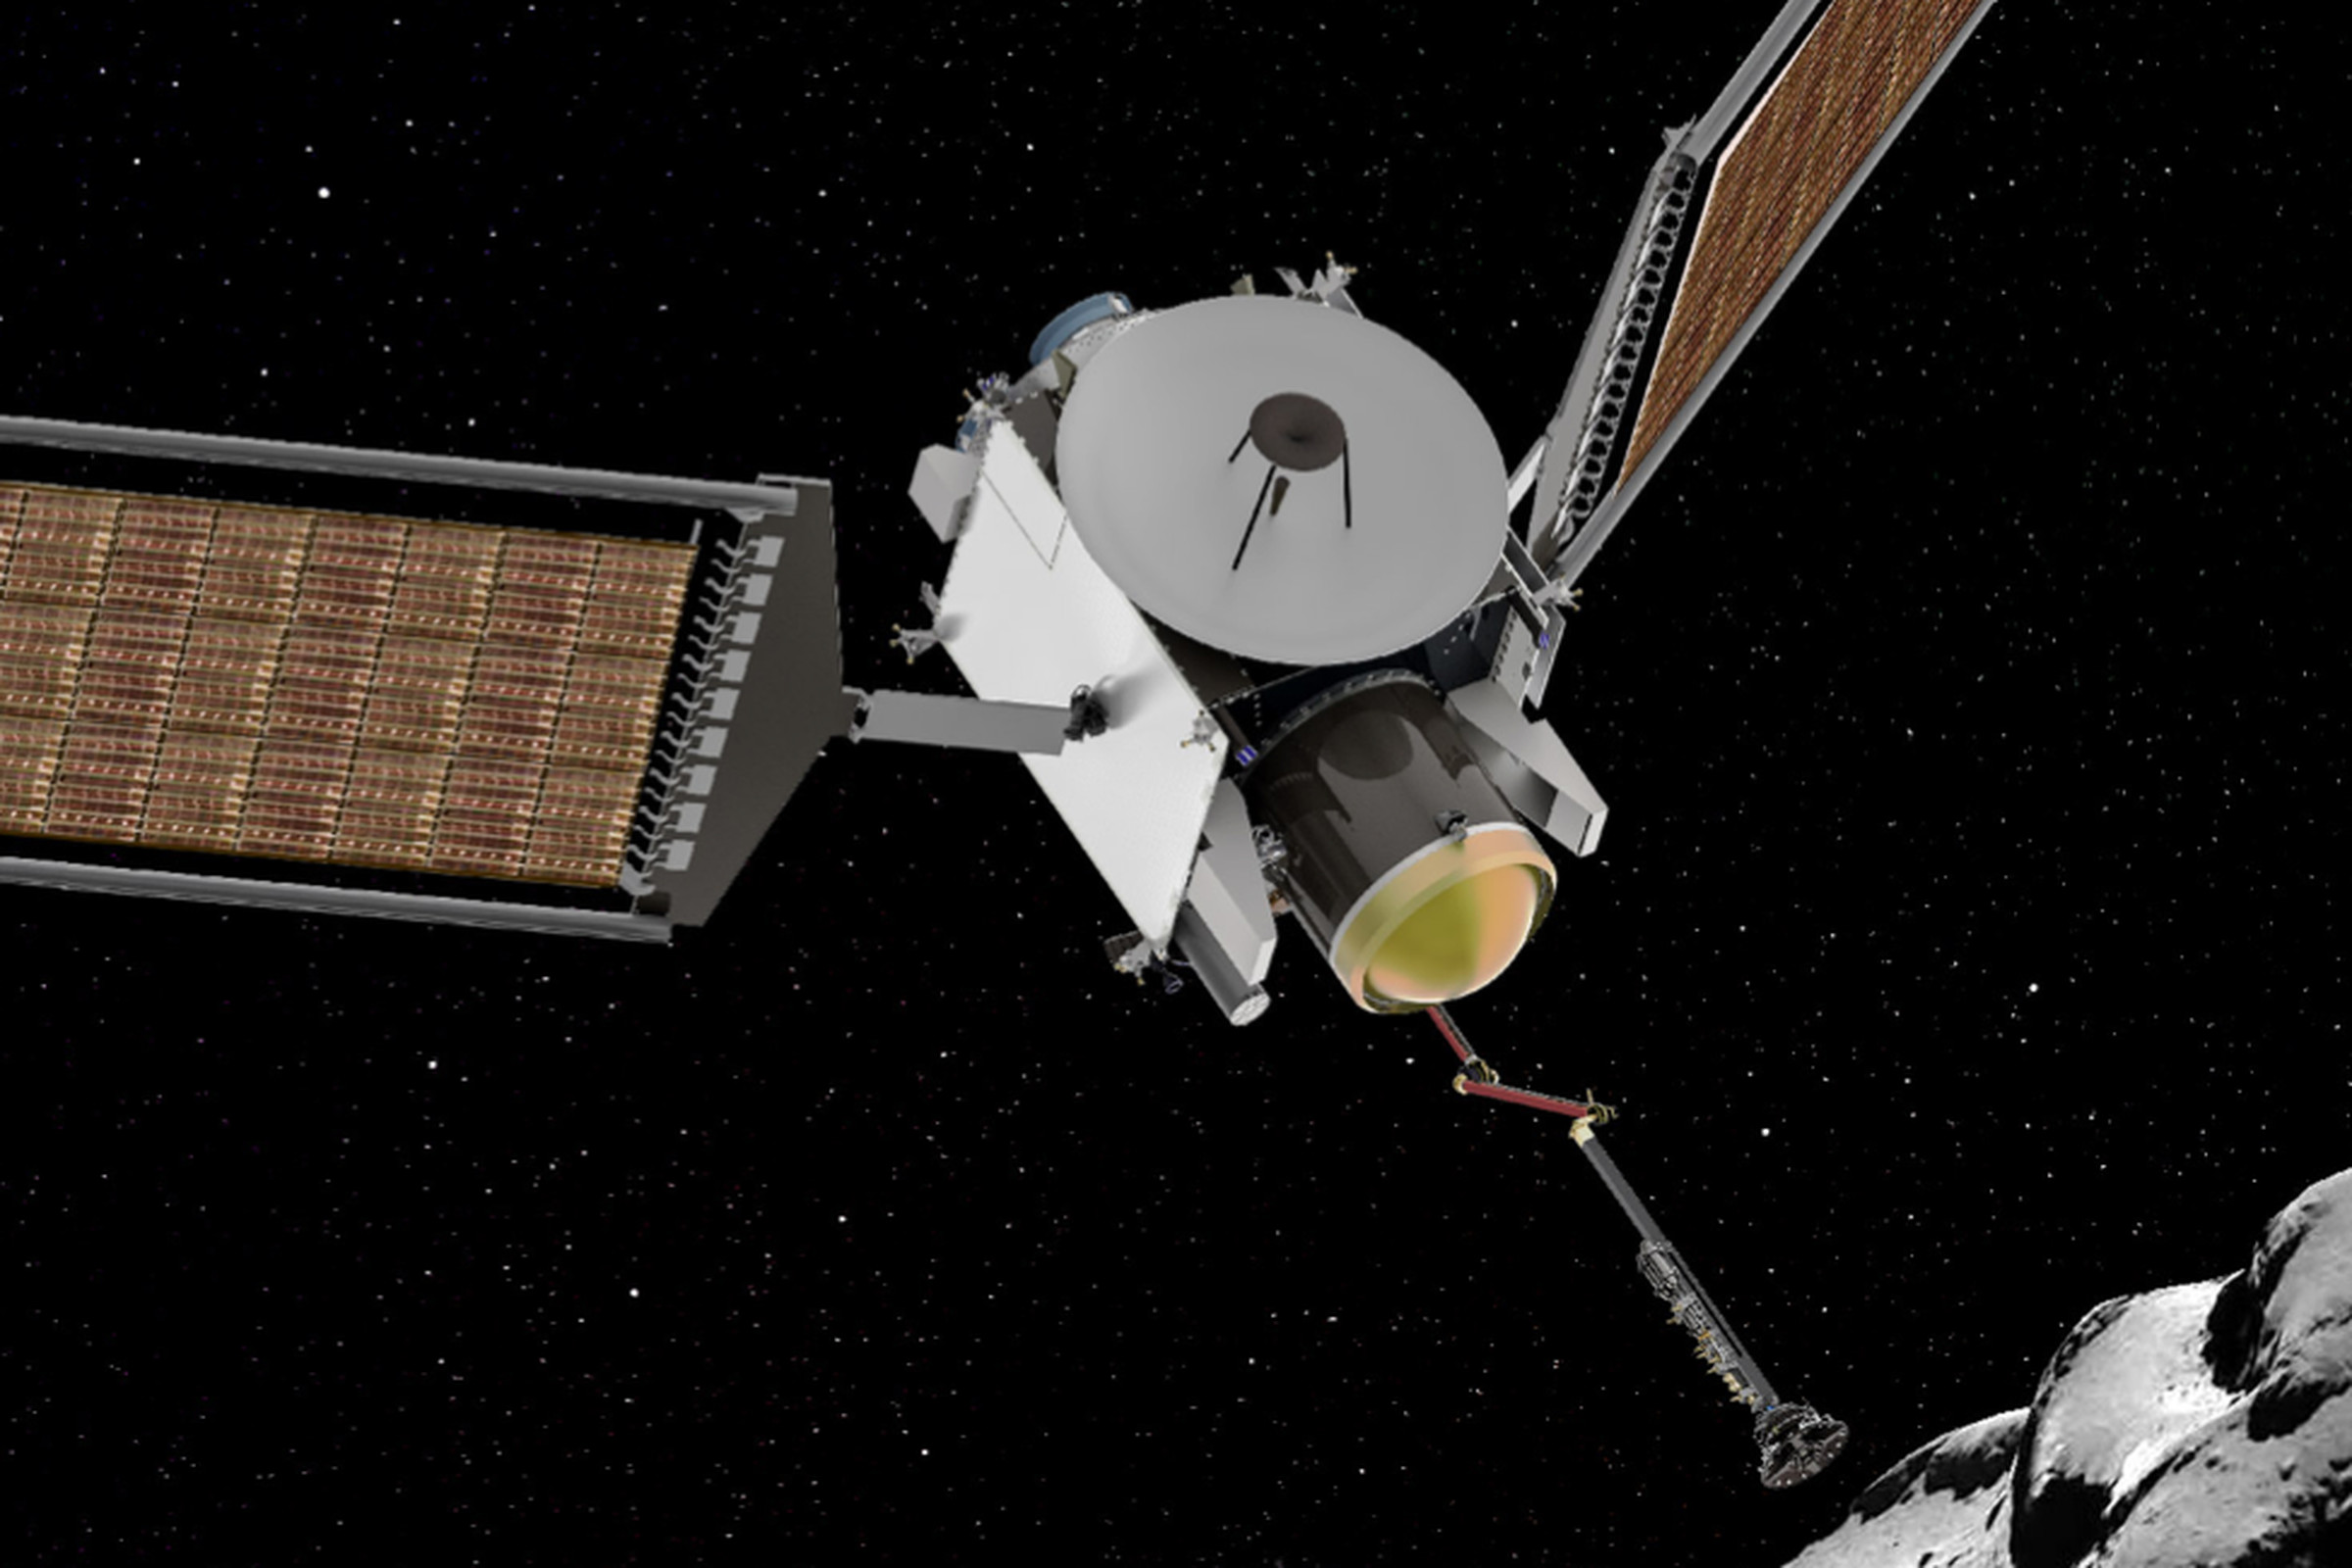 An illustration of the Comet Astrobiology Exploration Sample Return mission.